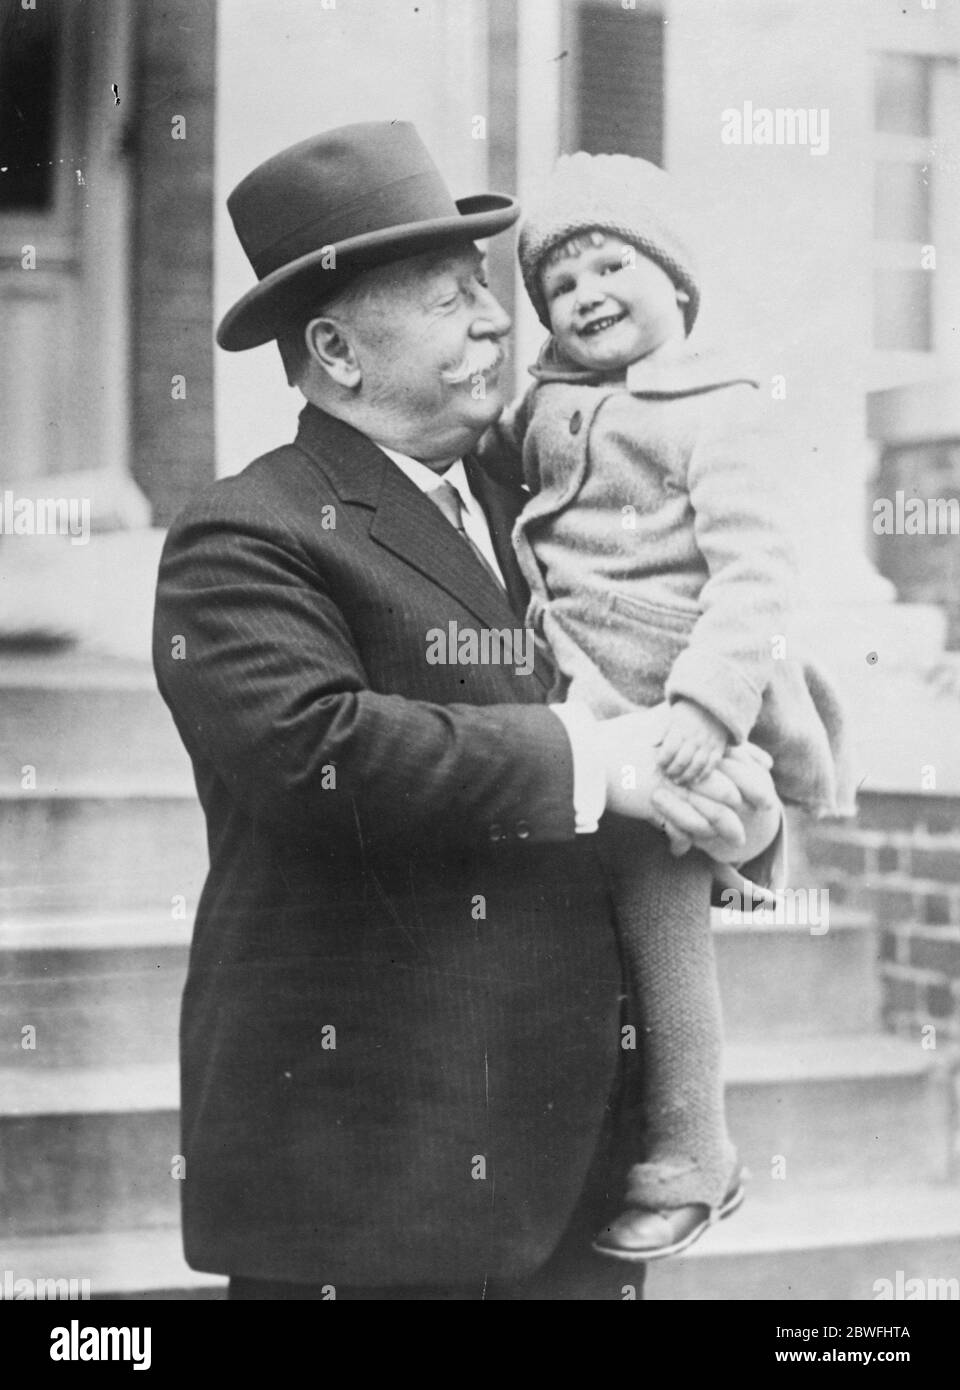 Ein angesehener Großvater . Herr W. Howard Taft, Chief Justice des Obersten Gerichtshofs der Vereinigten Staaten und der einzige lebende Ex - Präsident der Vereinigten Staaten, posiert für sein erstes Foto mit seiner kleinen Enkelin. Januar 1925 Stockfoto